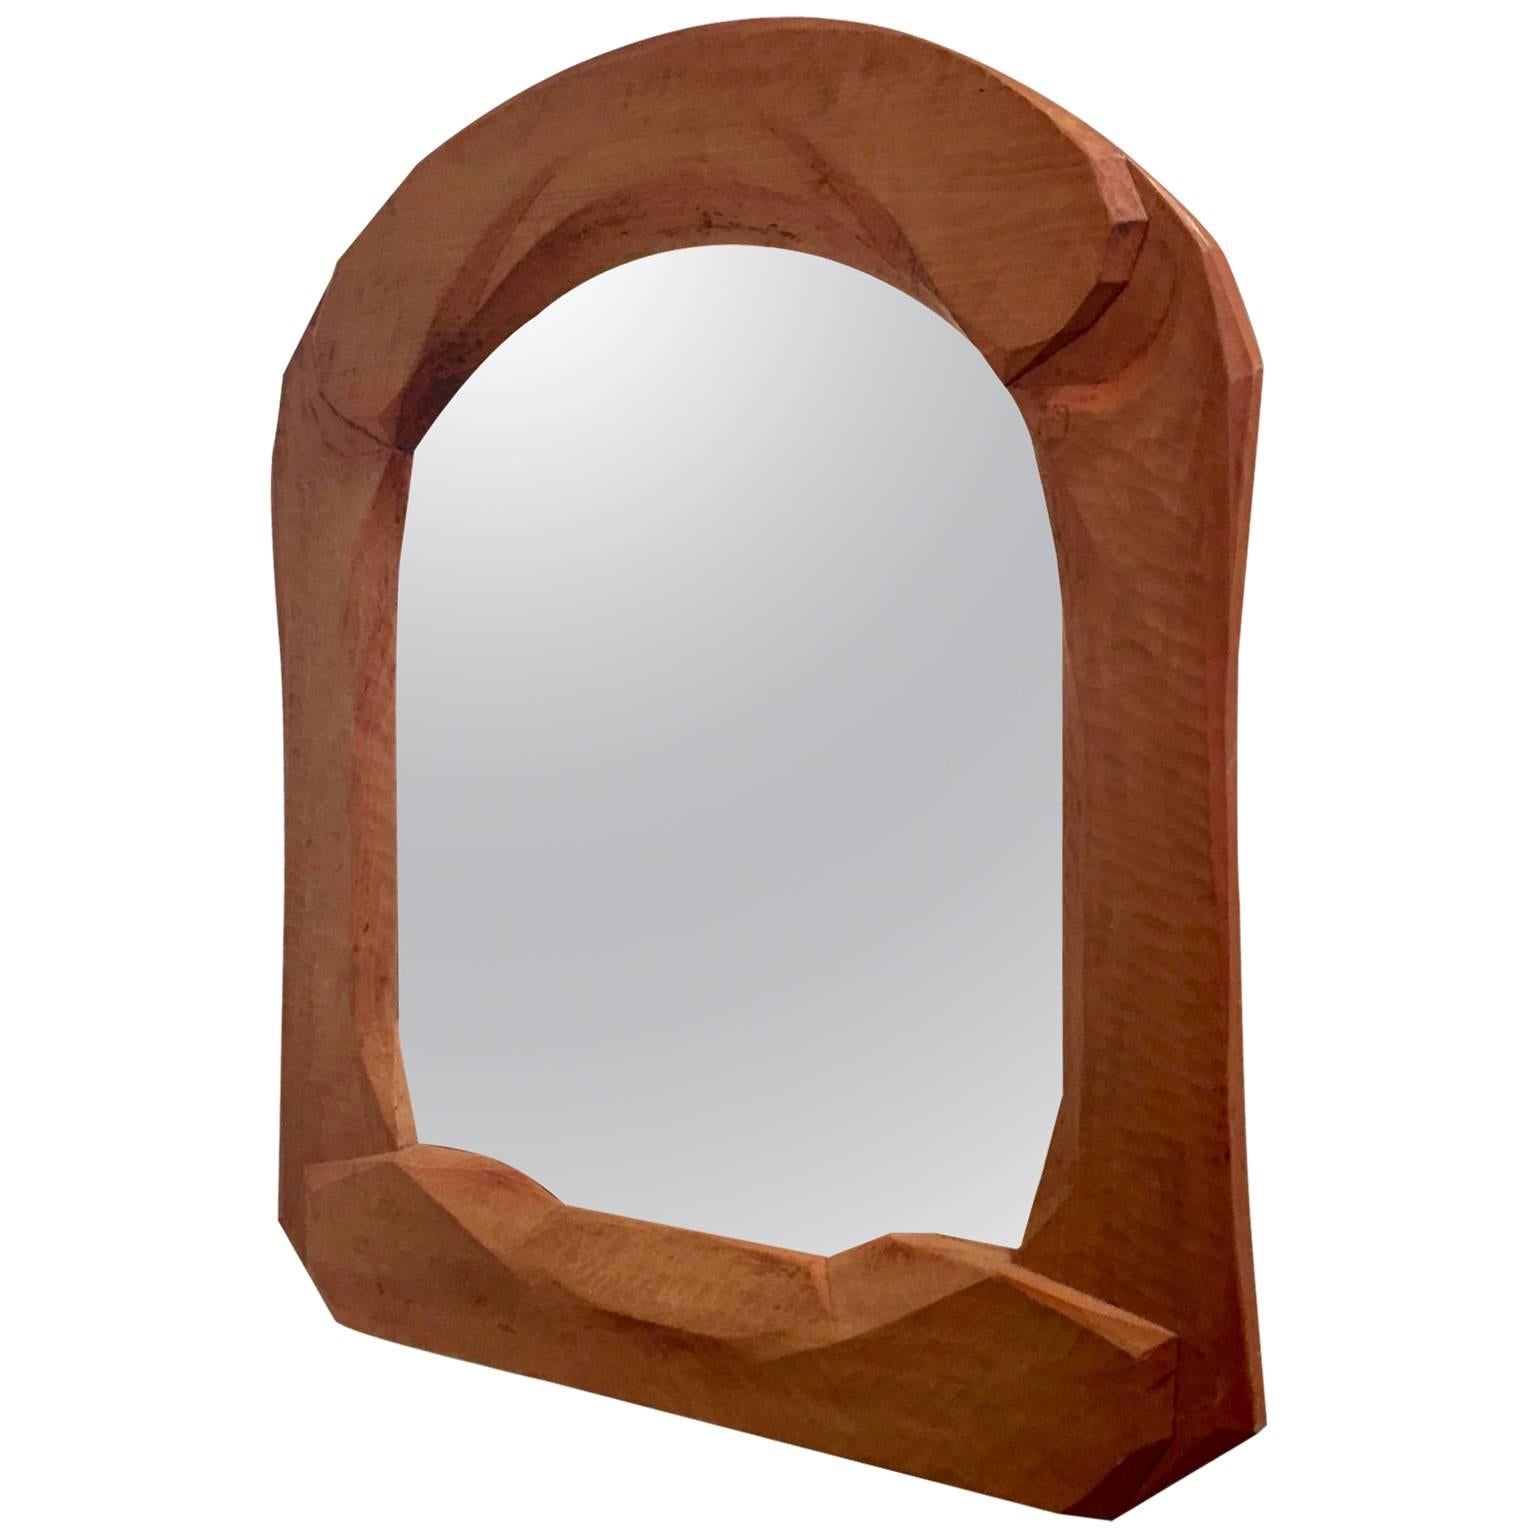 Rare Sculpted Wooden Mirror, Possibly Rudolf Steiner